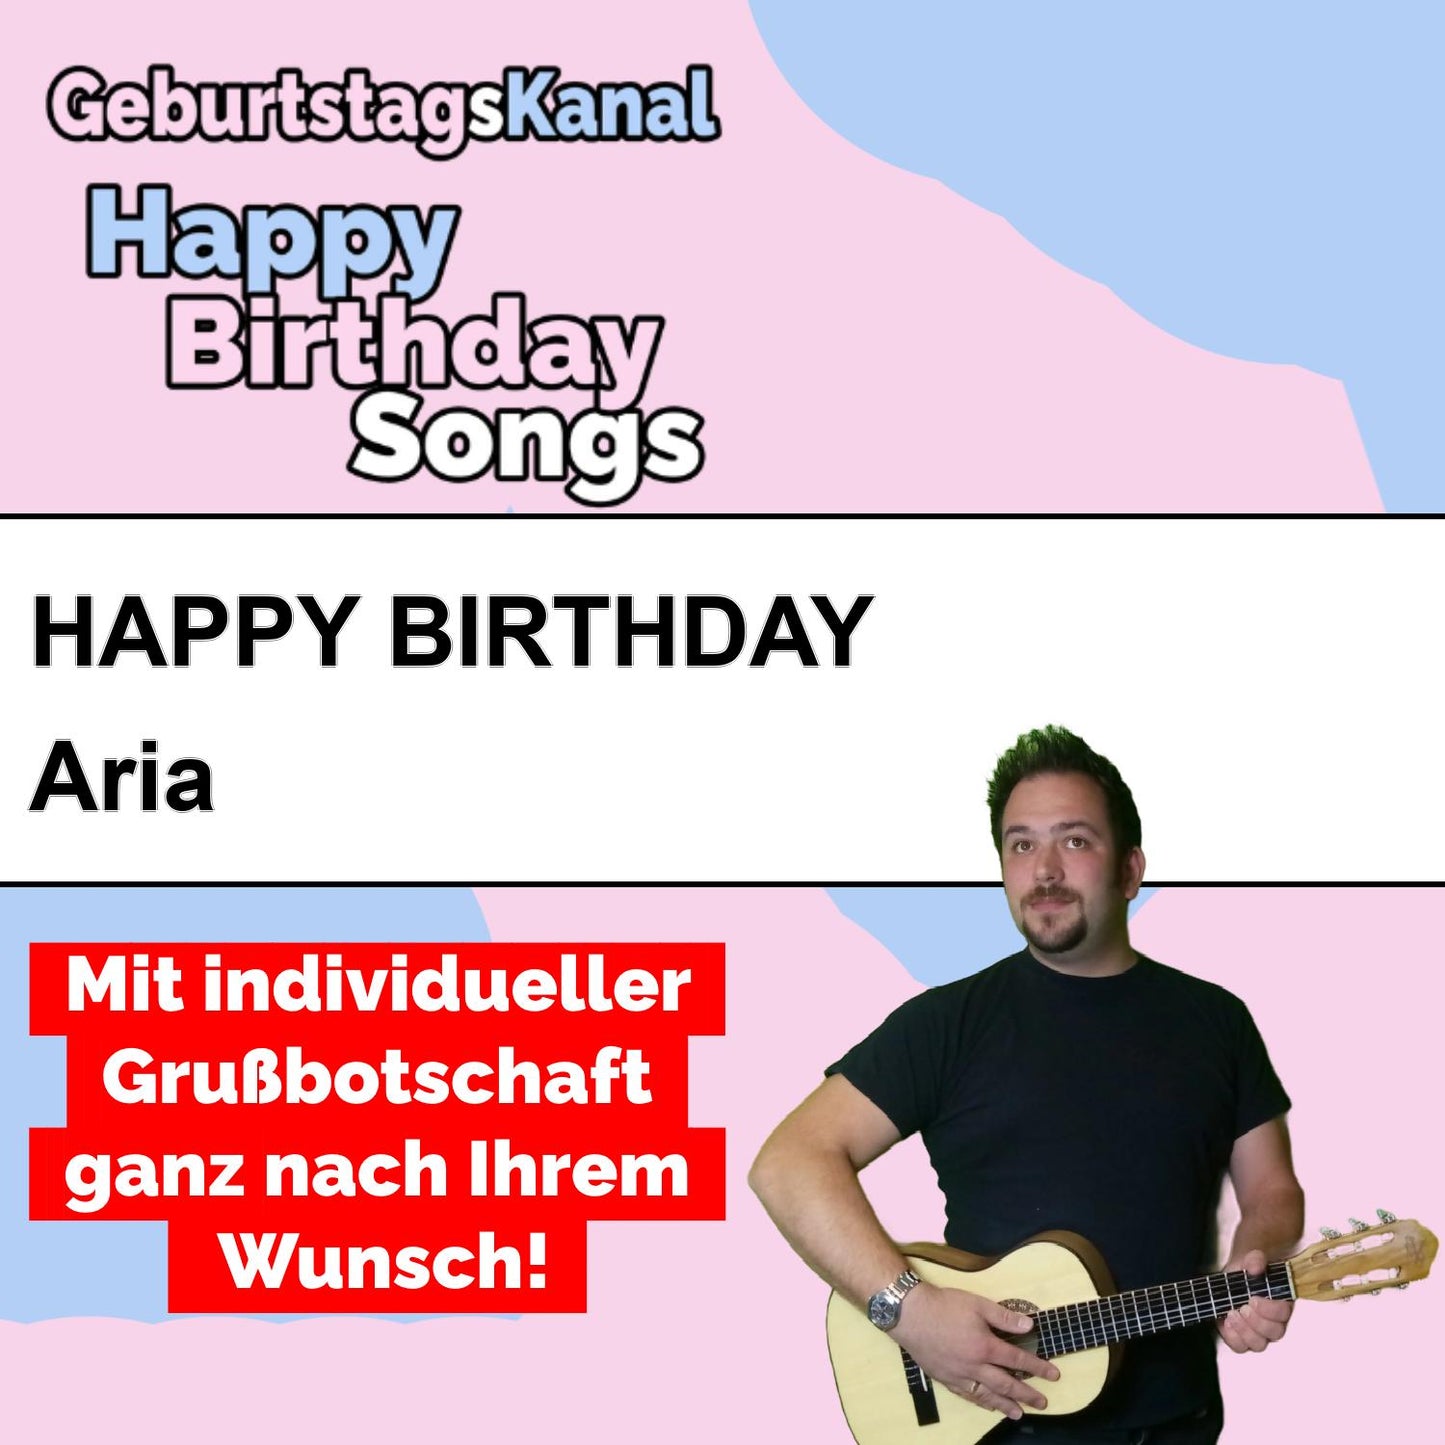 Produktbild Happy Birthday to you Aria mit Wunschgrußbotschaft